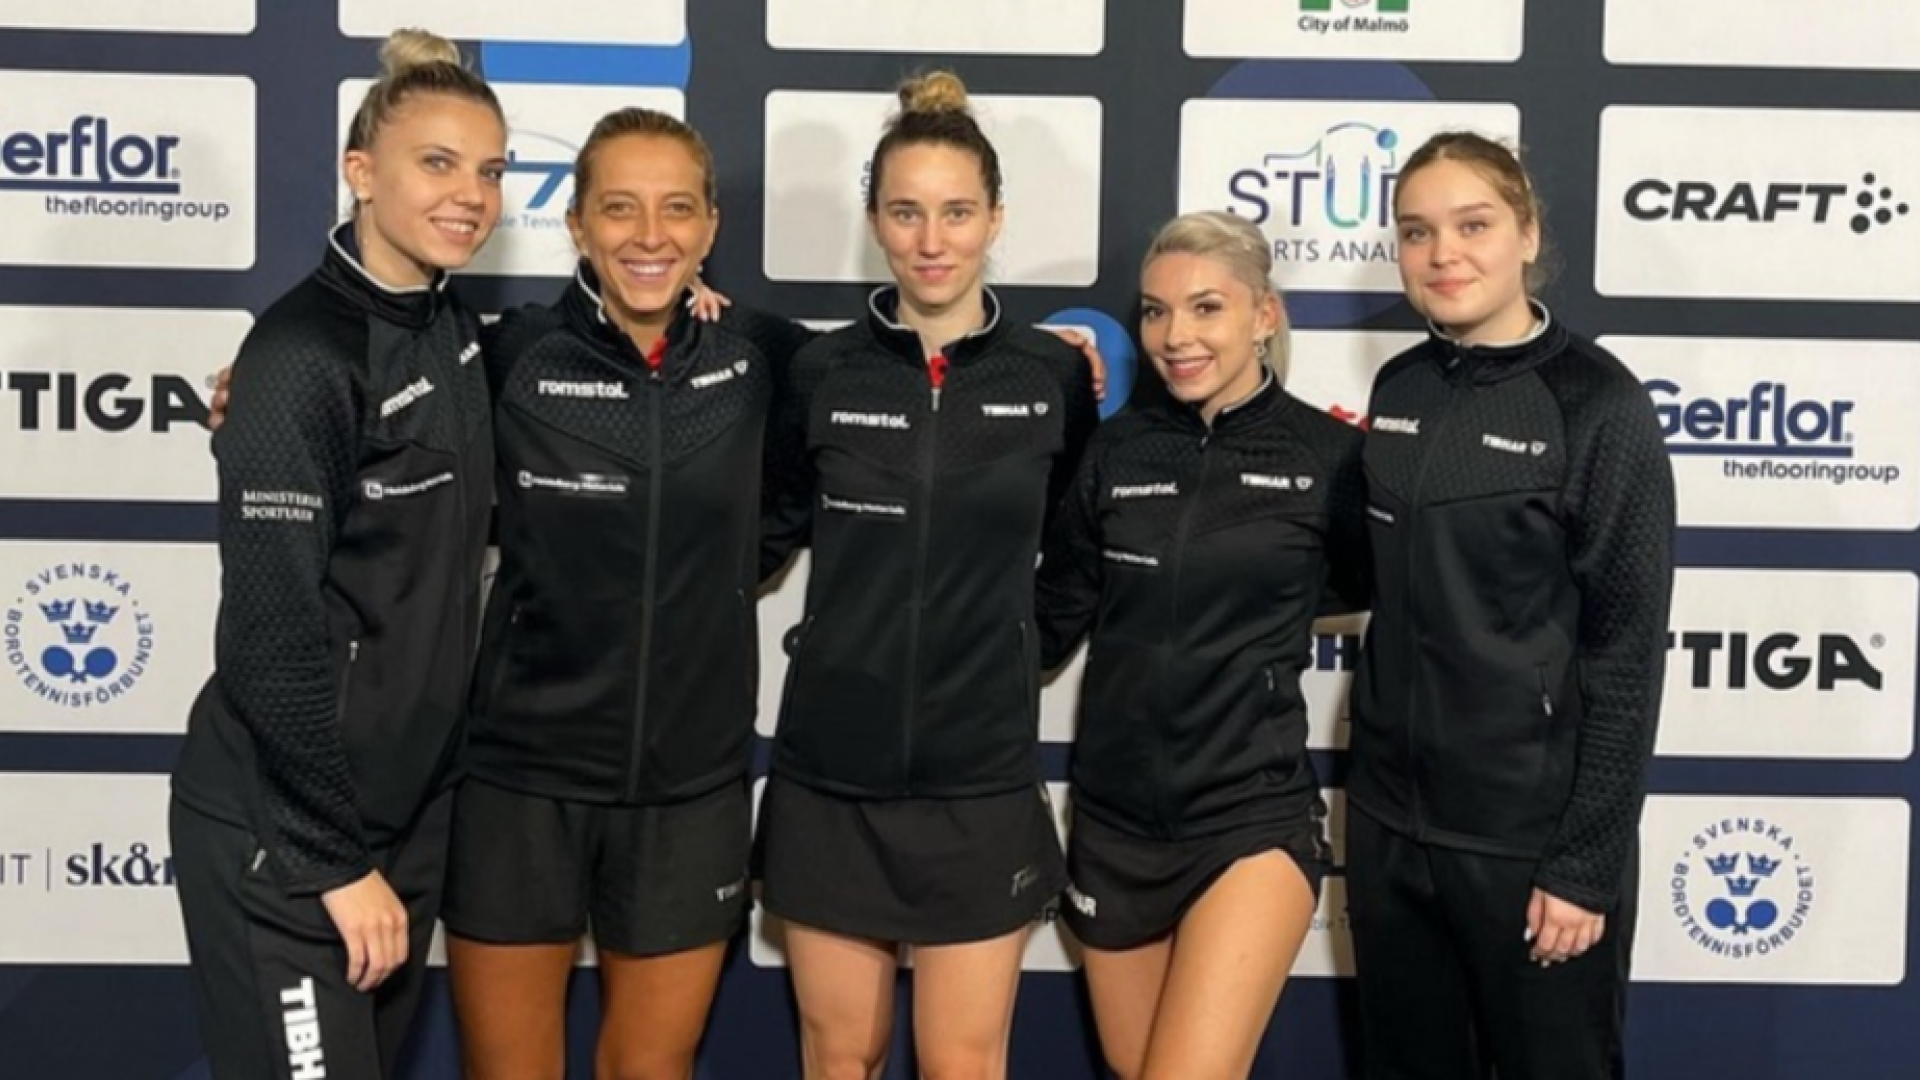 echipa feminina tenis de masa